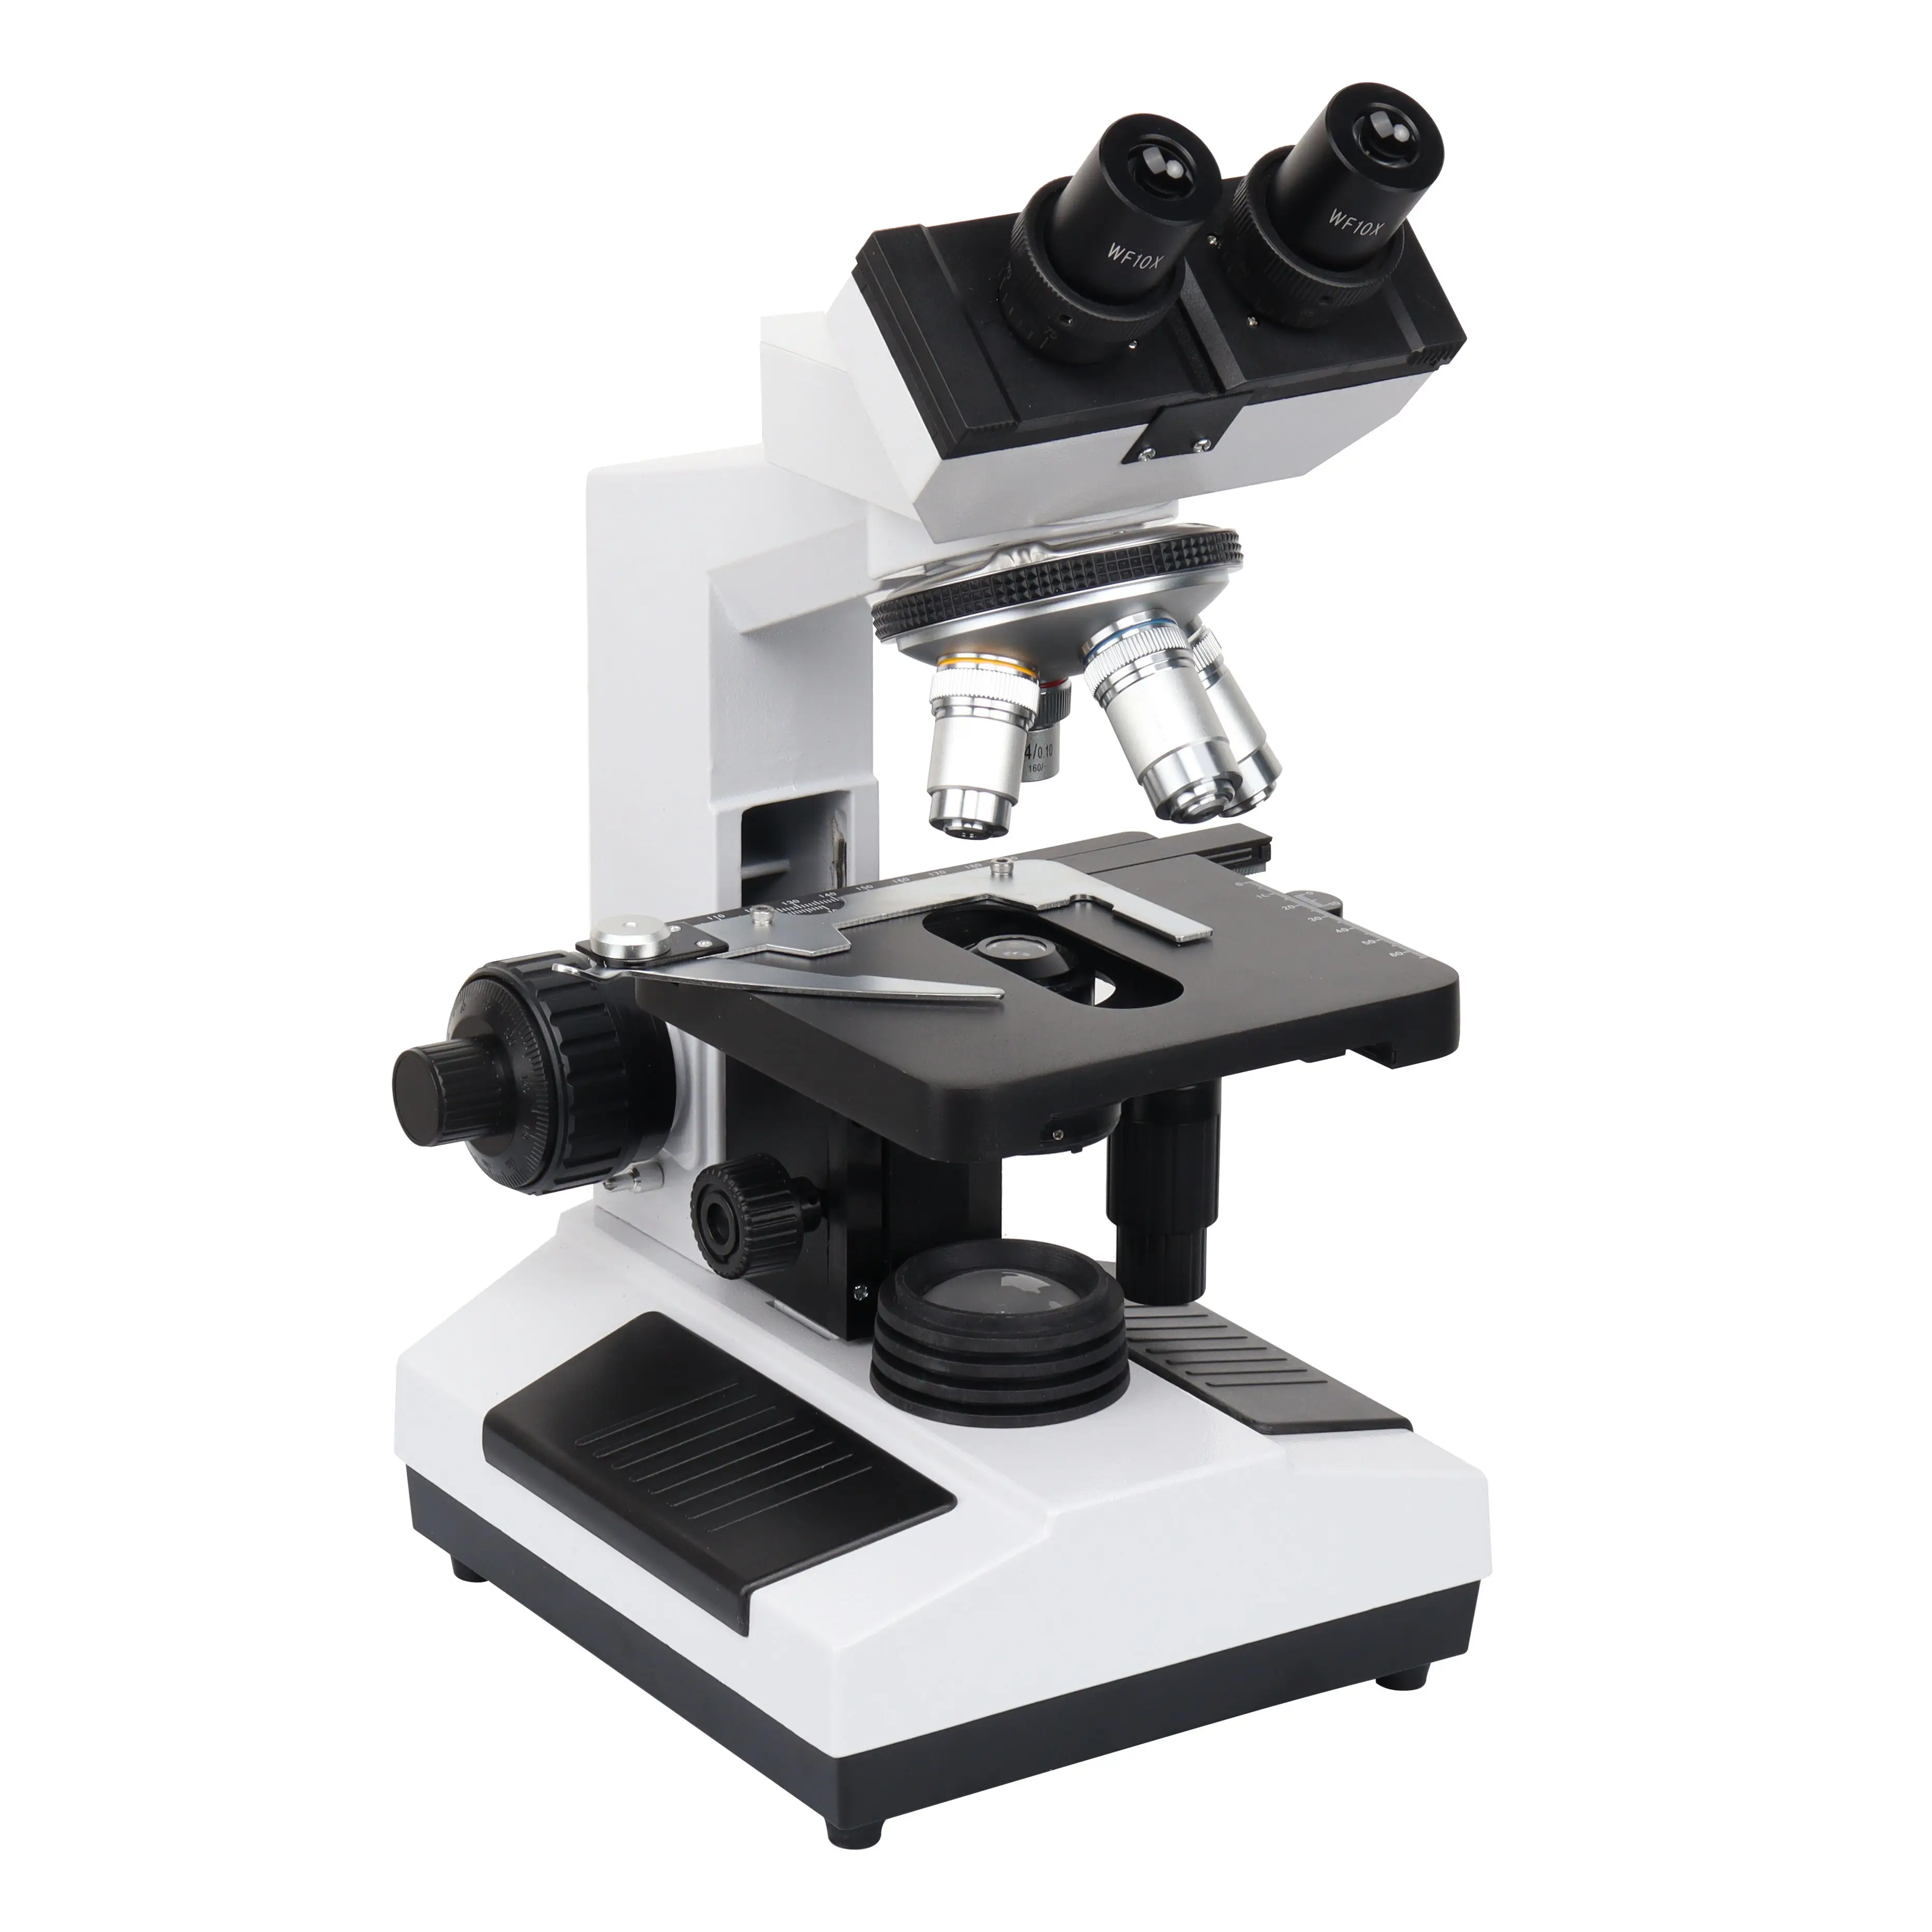 הטוב ביותר באיכות HXSZ-107BN רפואי מעבדה מיקרוסקופ המשקפת מיקרוסקופ